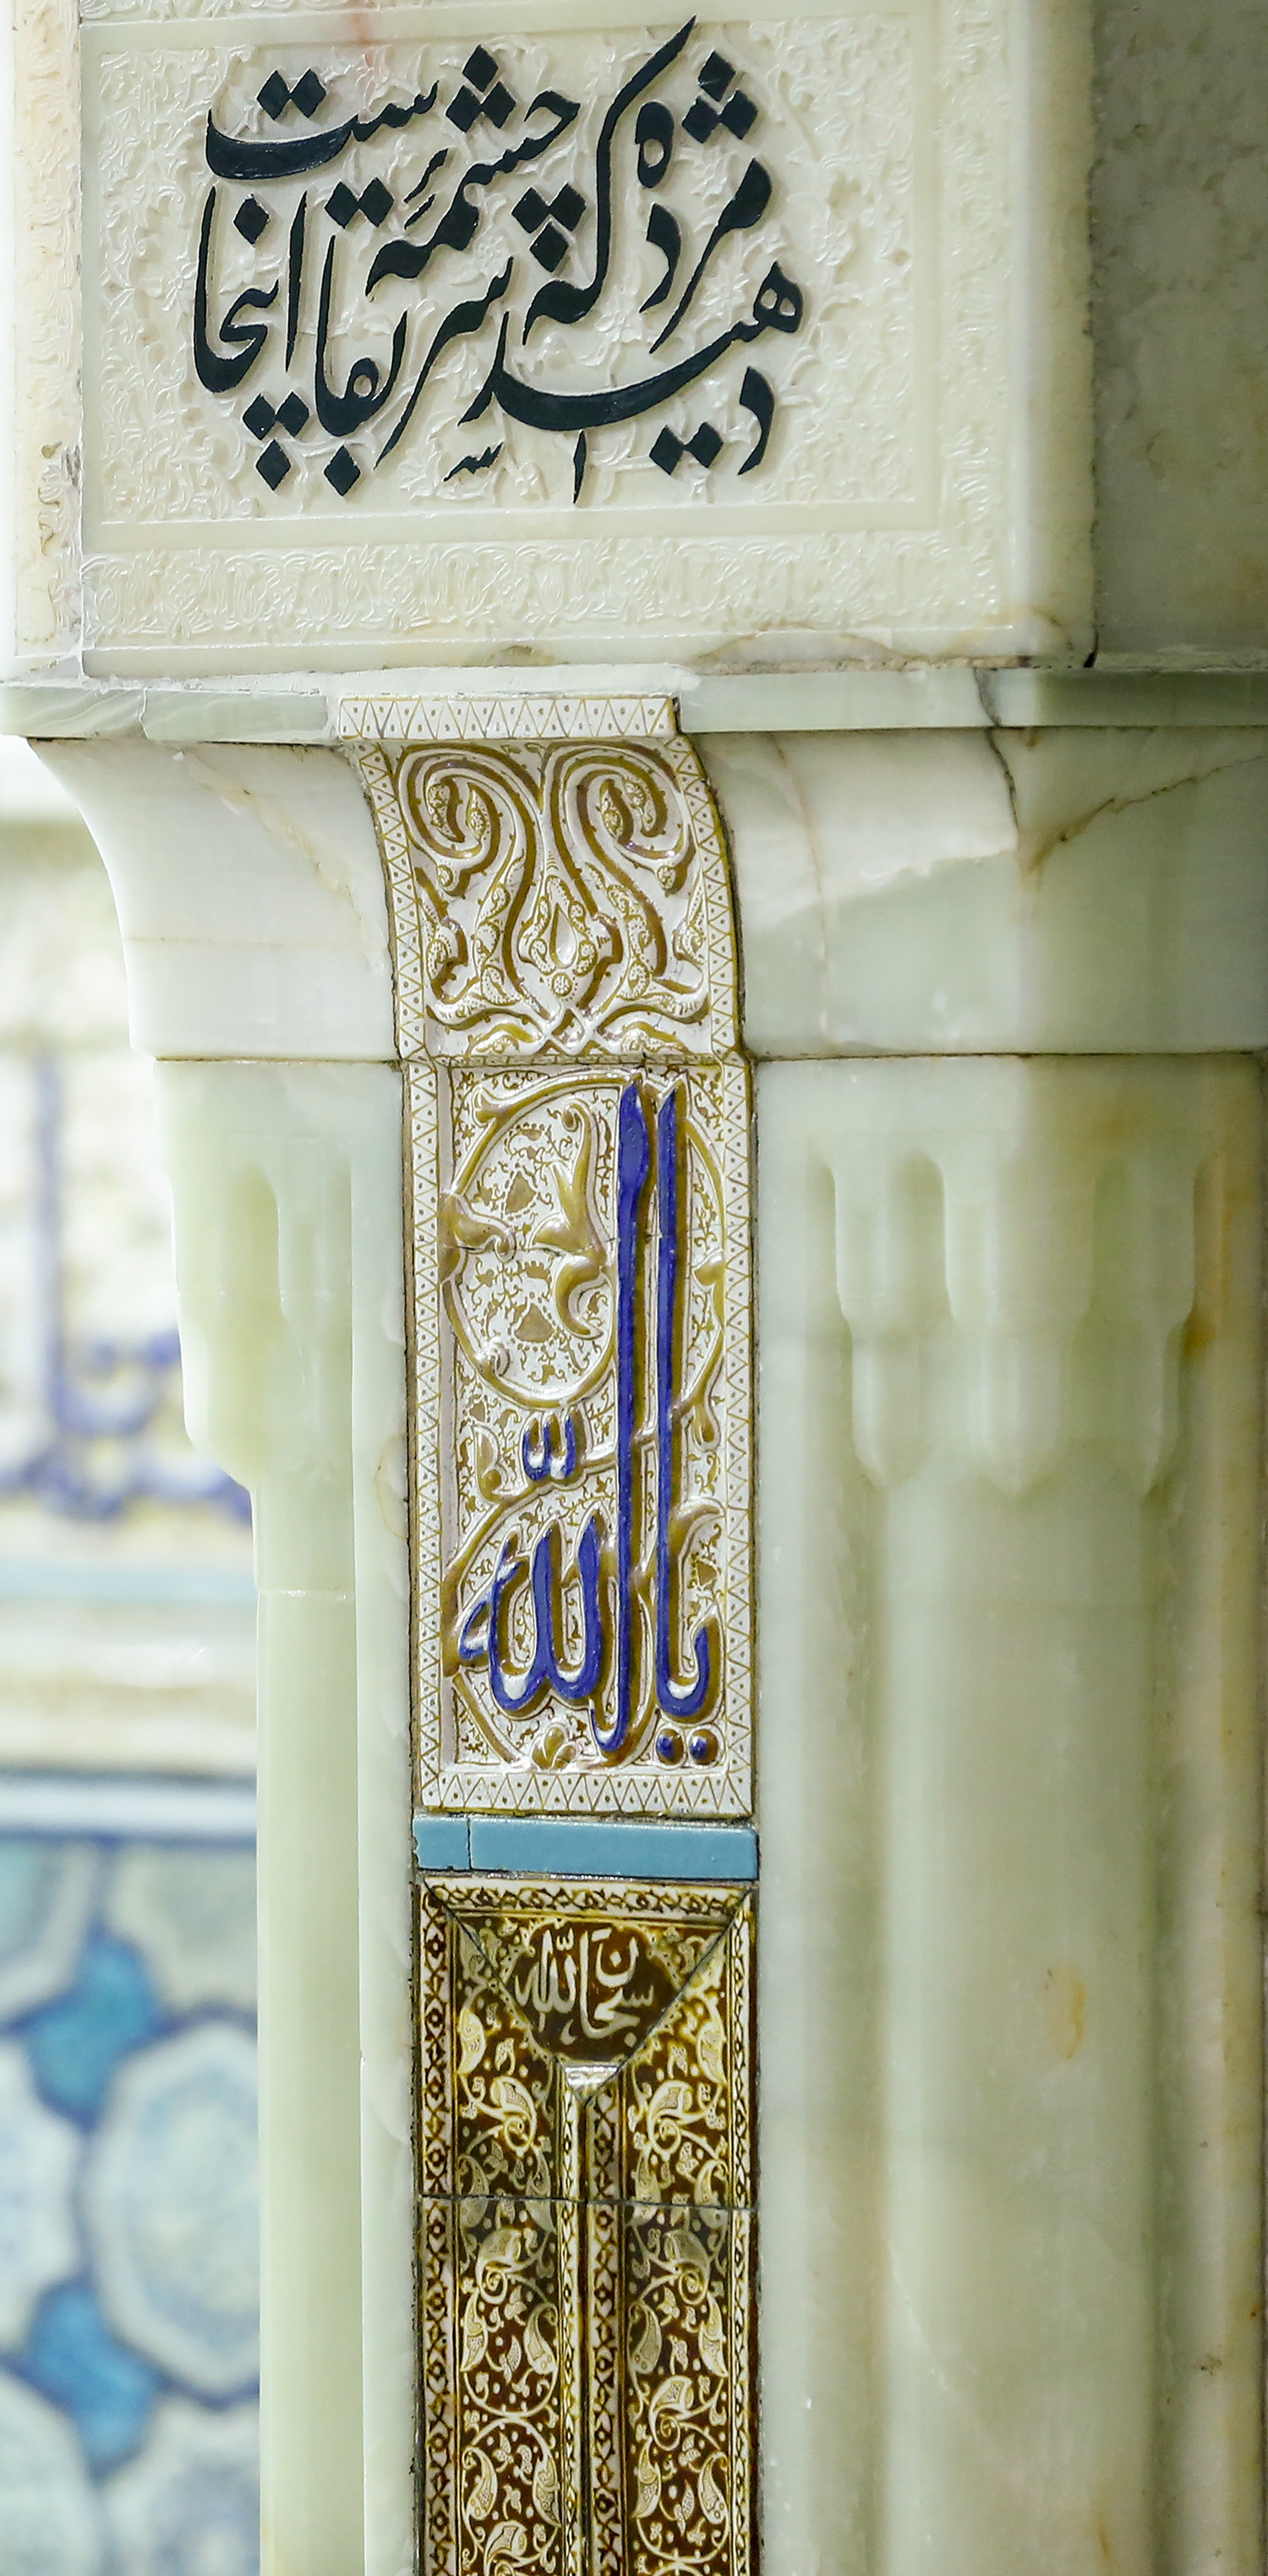 عکس با کیفیت : کاشی مزین به نام الله در روضه منوره حرم مطهر رضوی